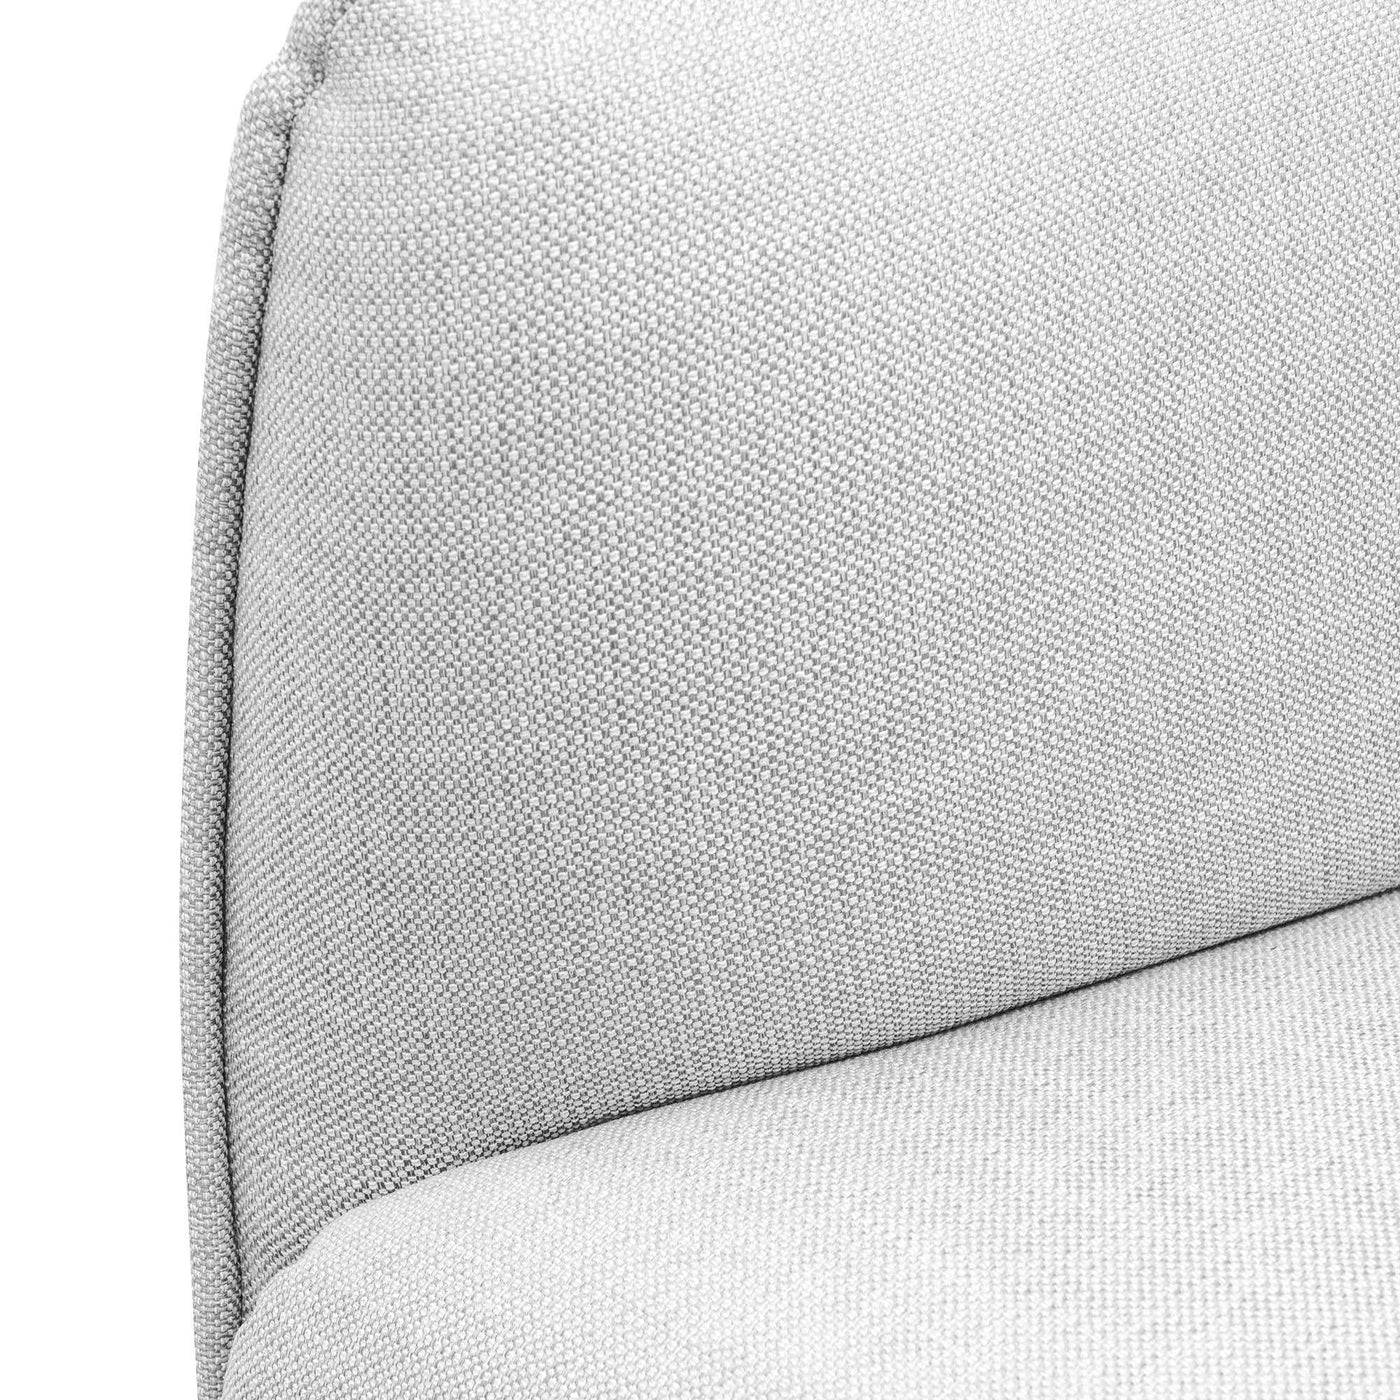 3 Seater Fabric Sofa- Light Texture Grey